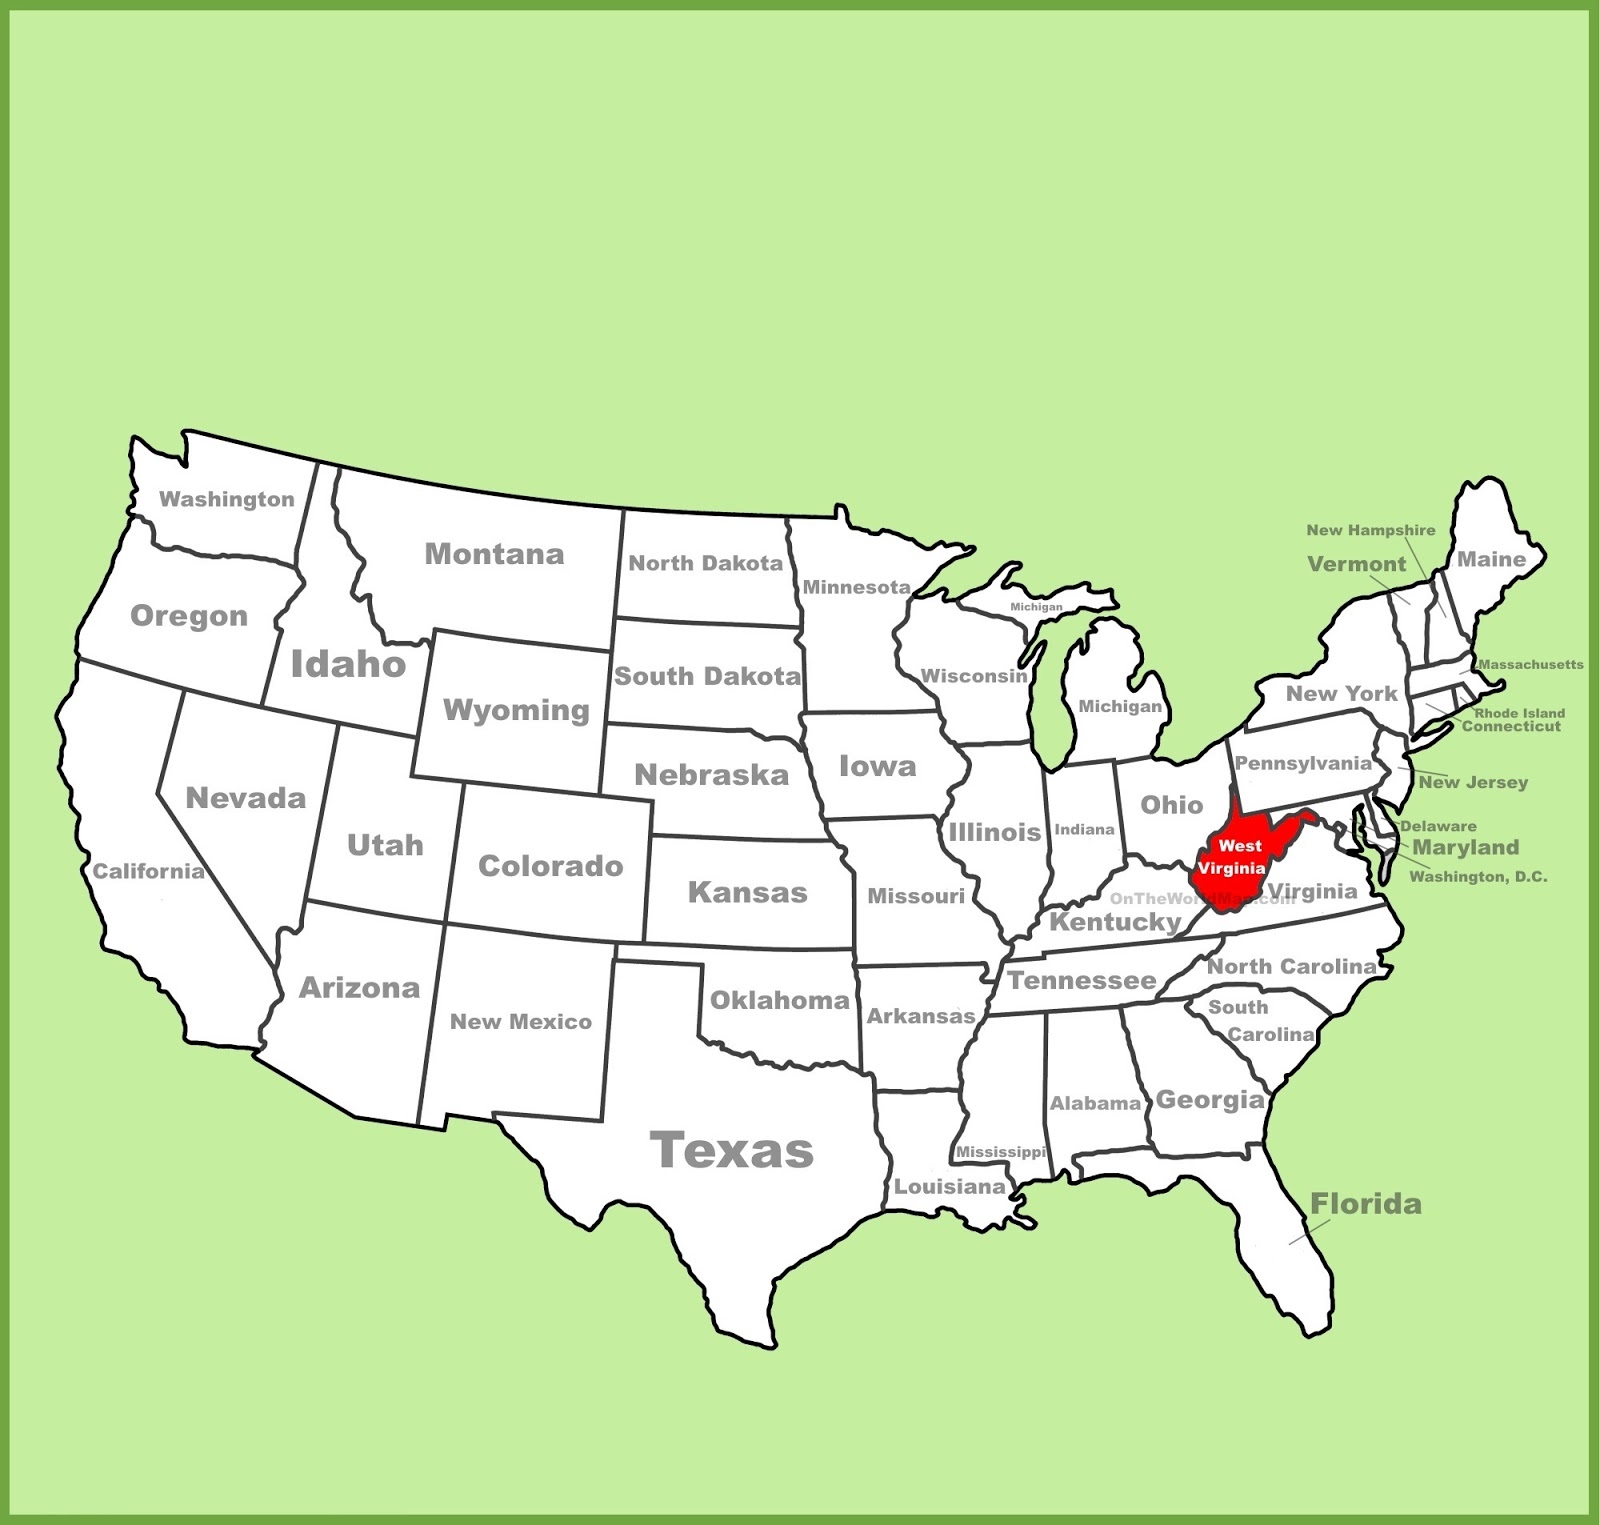 West Virginia Cities Map